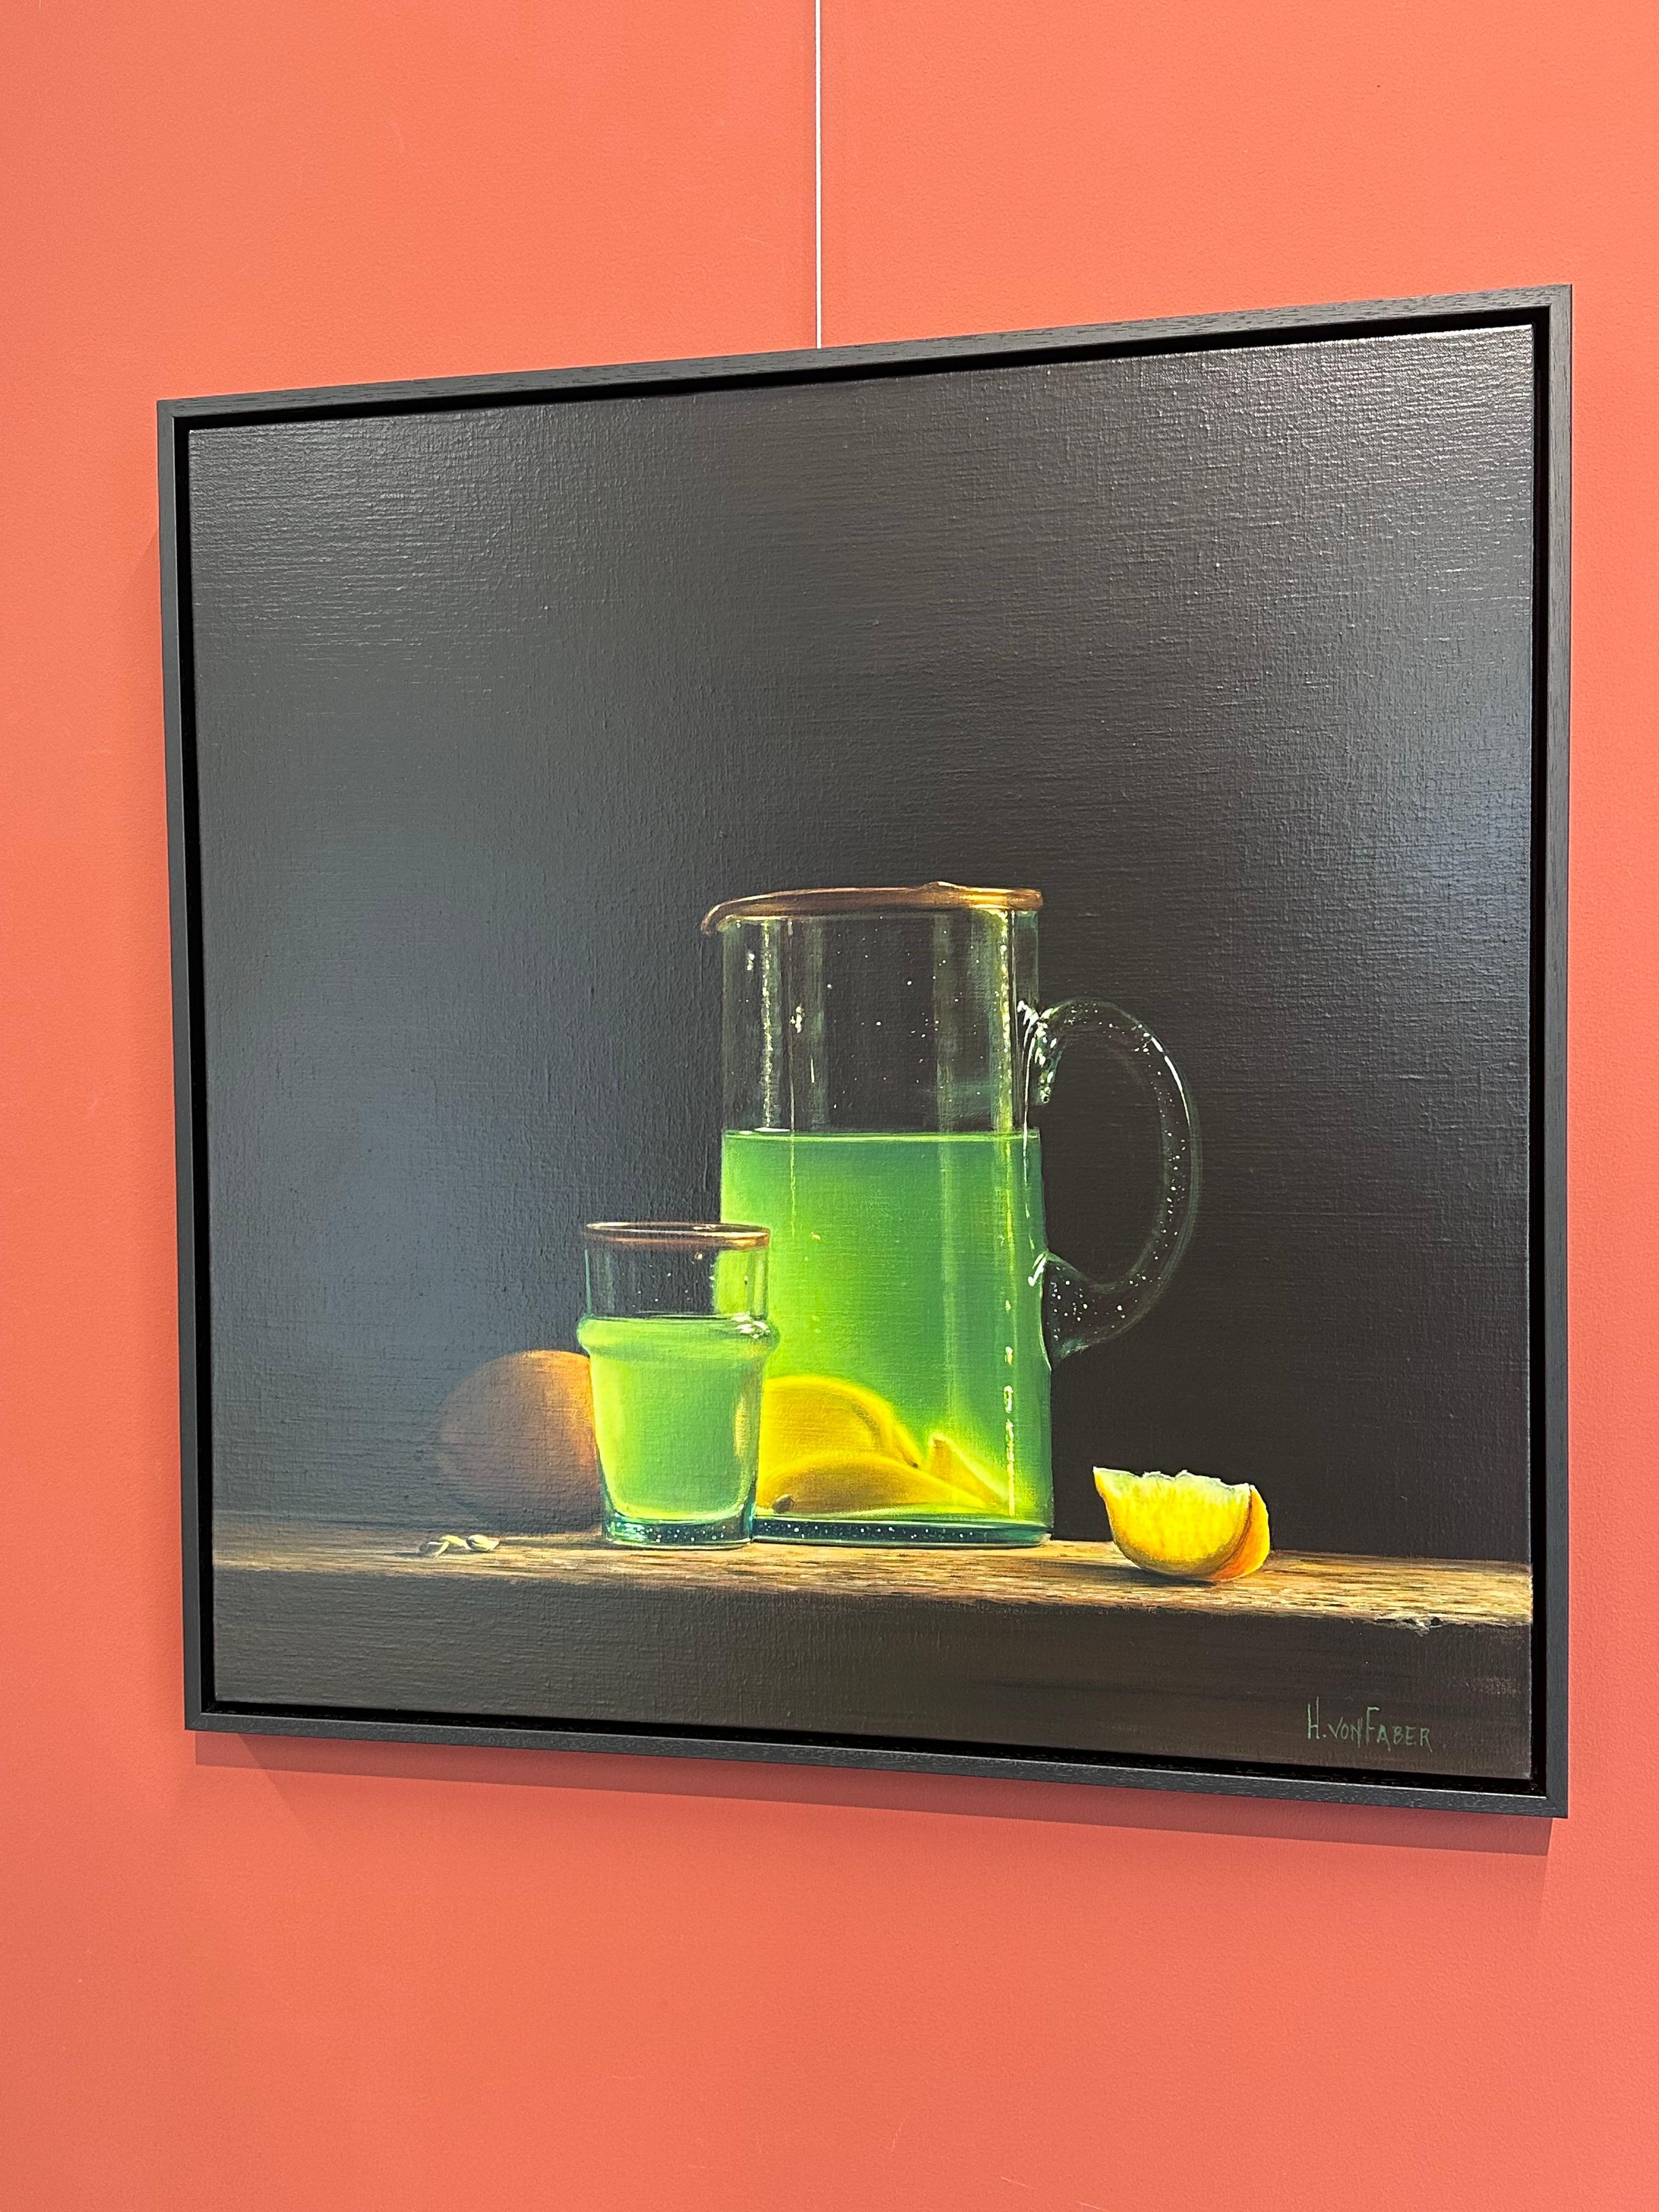 Heidi von Faber
Limonade au citron
Acrylique sur lin
70 x 70 cm ( encadré/ inclus dans le prix 75 x 75 cm)

L'artiste néerlandaise Heidi Von Faber vit et travaille à La Haye. 

Les natures mortes qu'elle peint sont modernes mais réalisées selon la